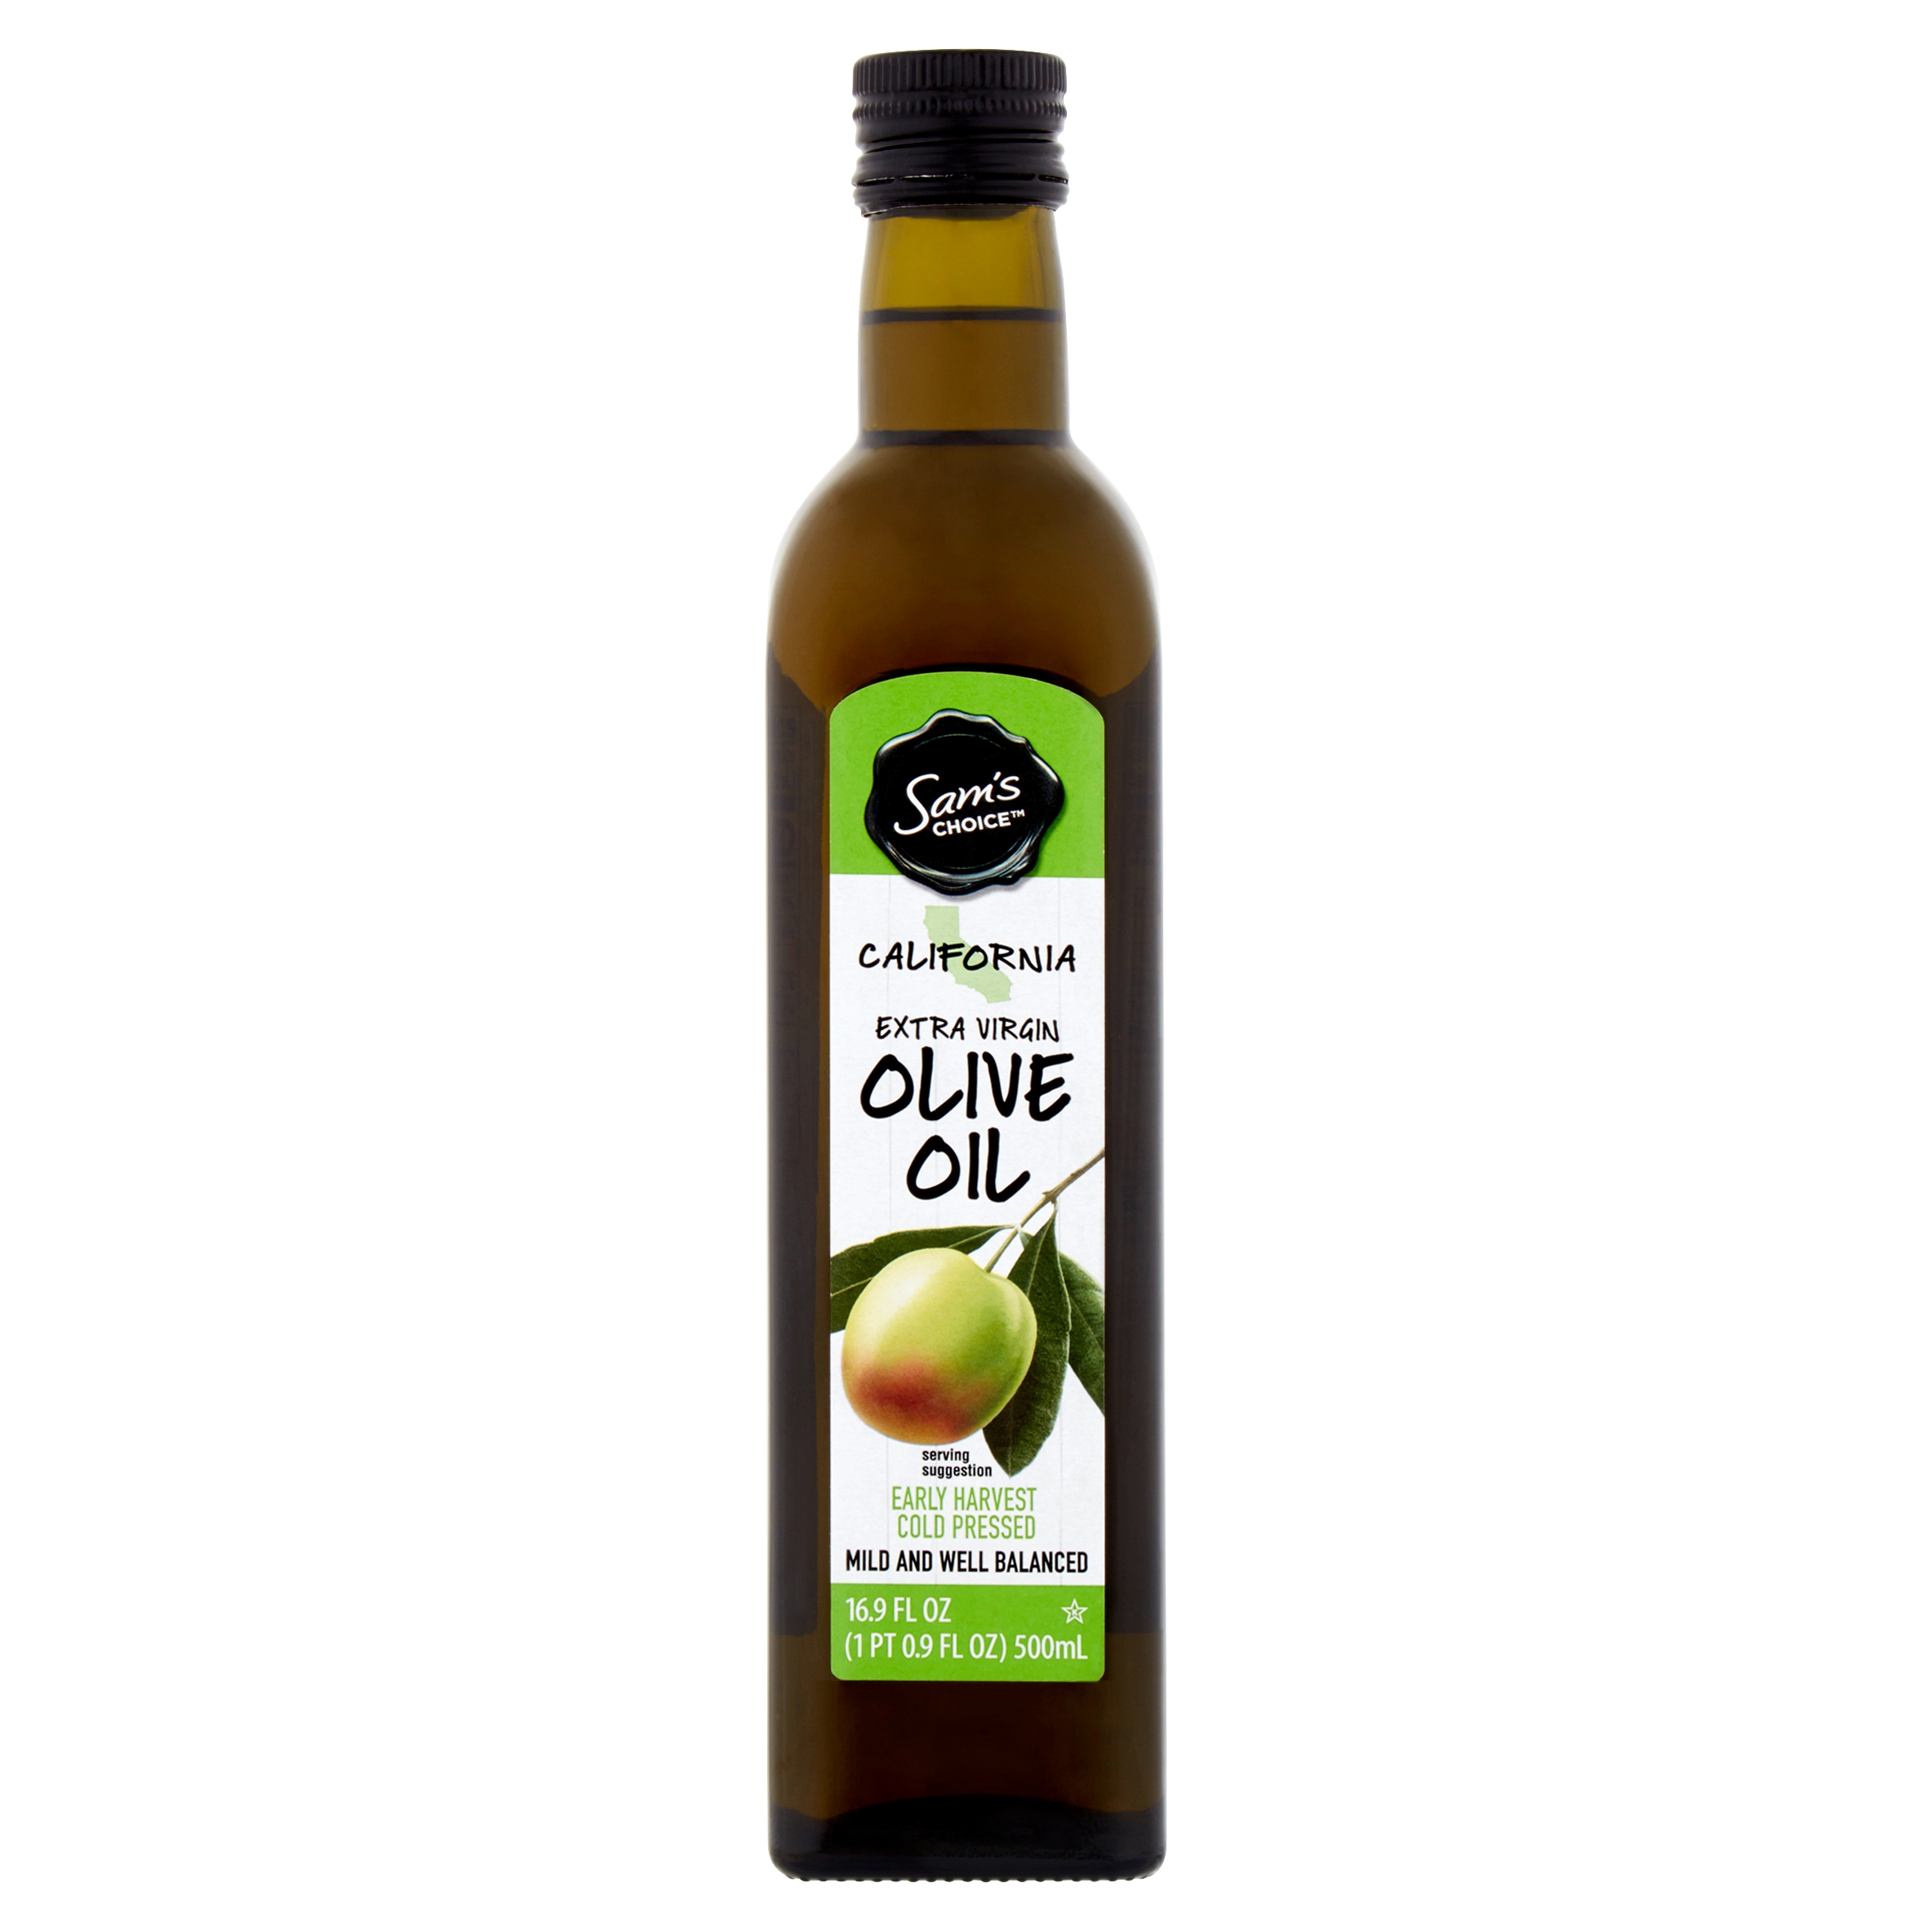 Sam's Choice California Extra Virgin Olive Oil 16.9oz